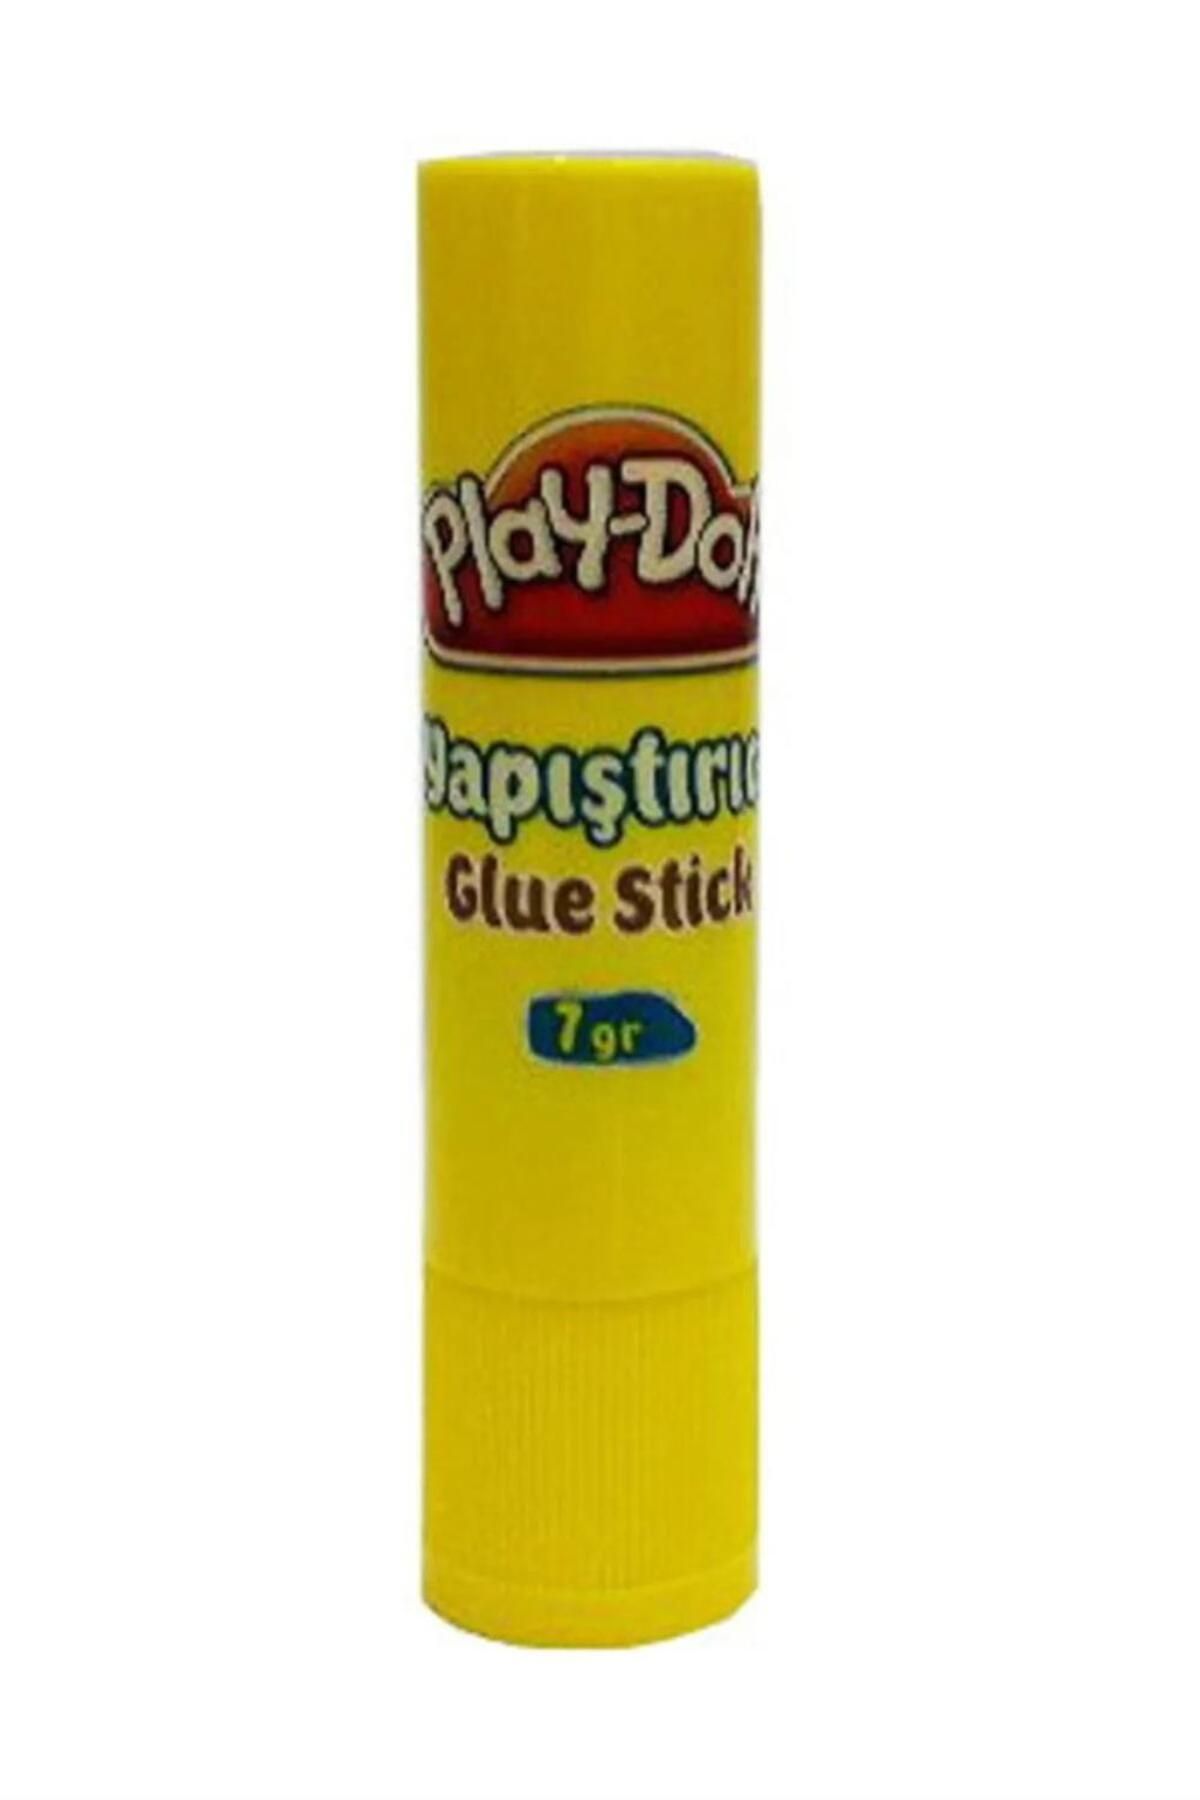 Play Doh Playdoh Glue Stıck Yapıştırıcı 7 Gr.